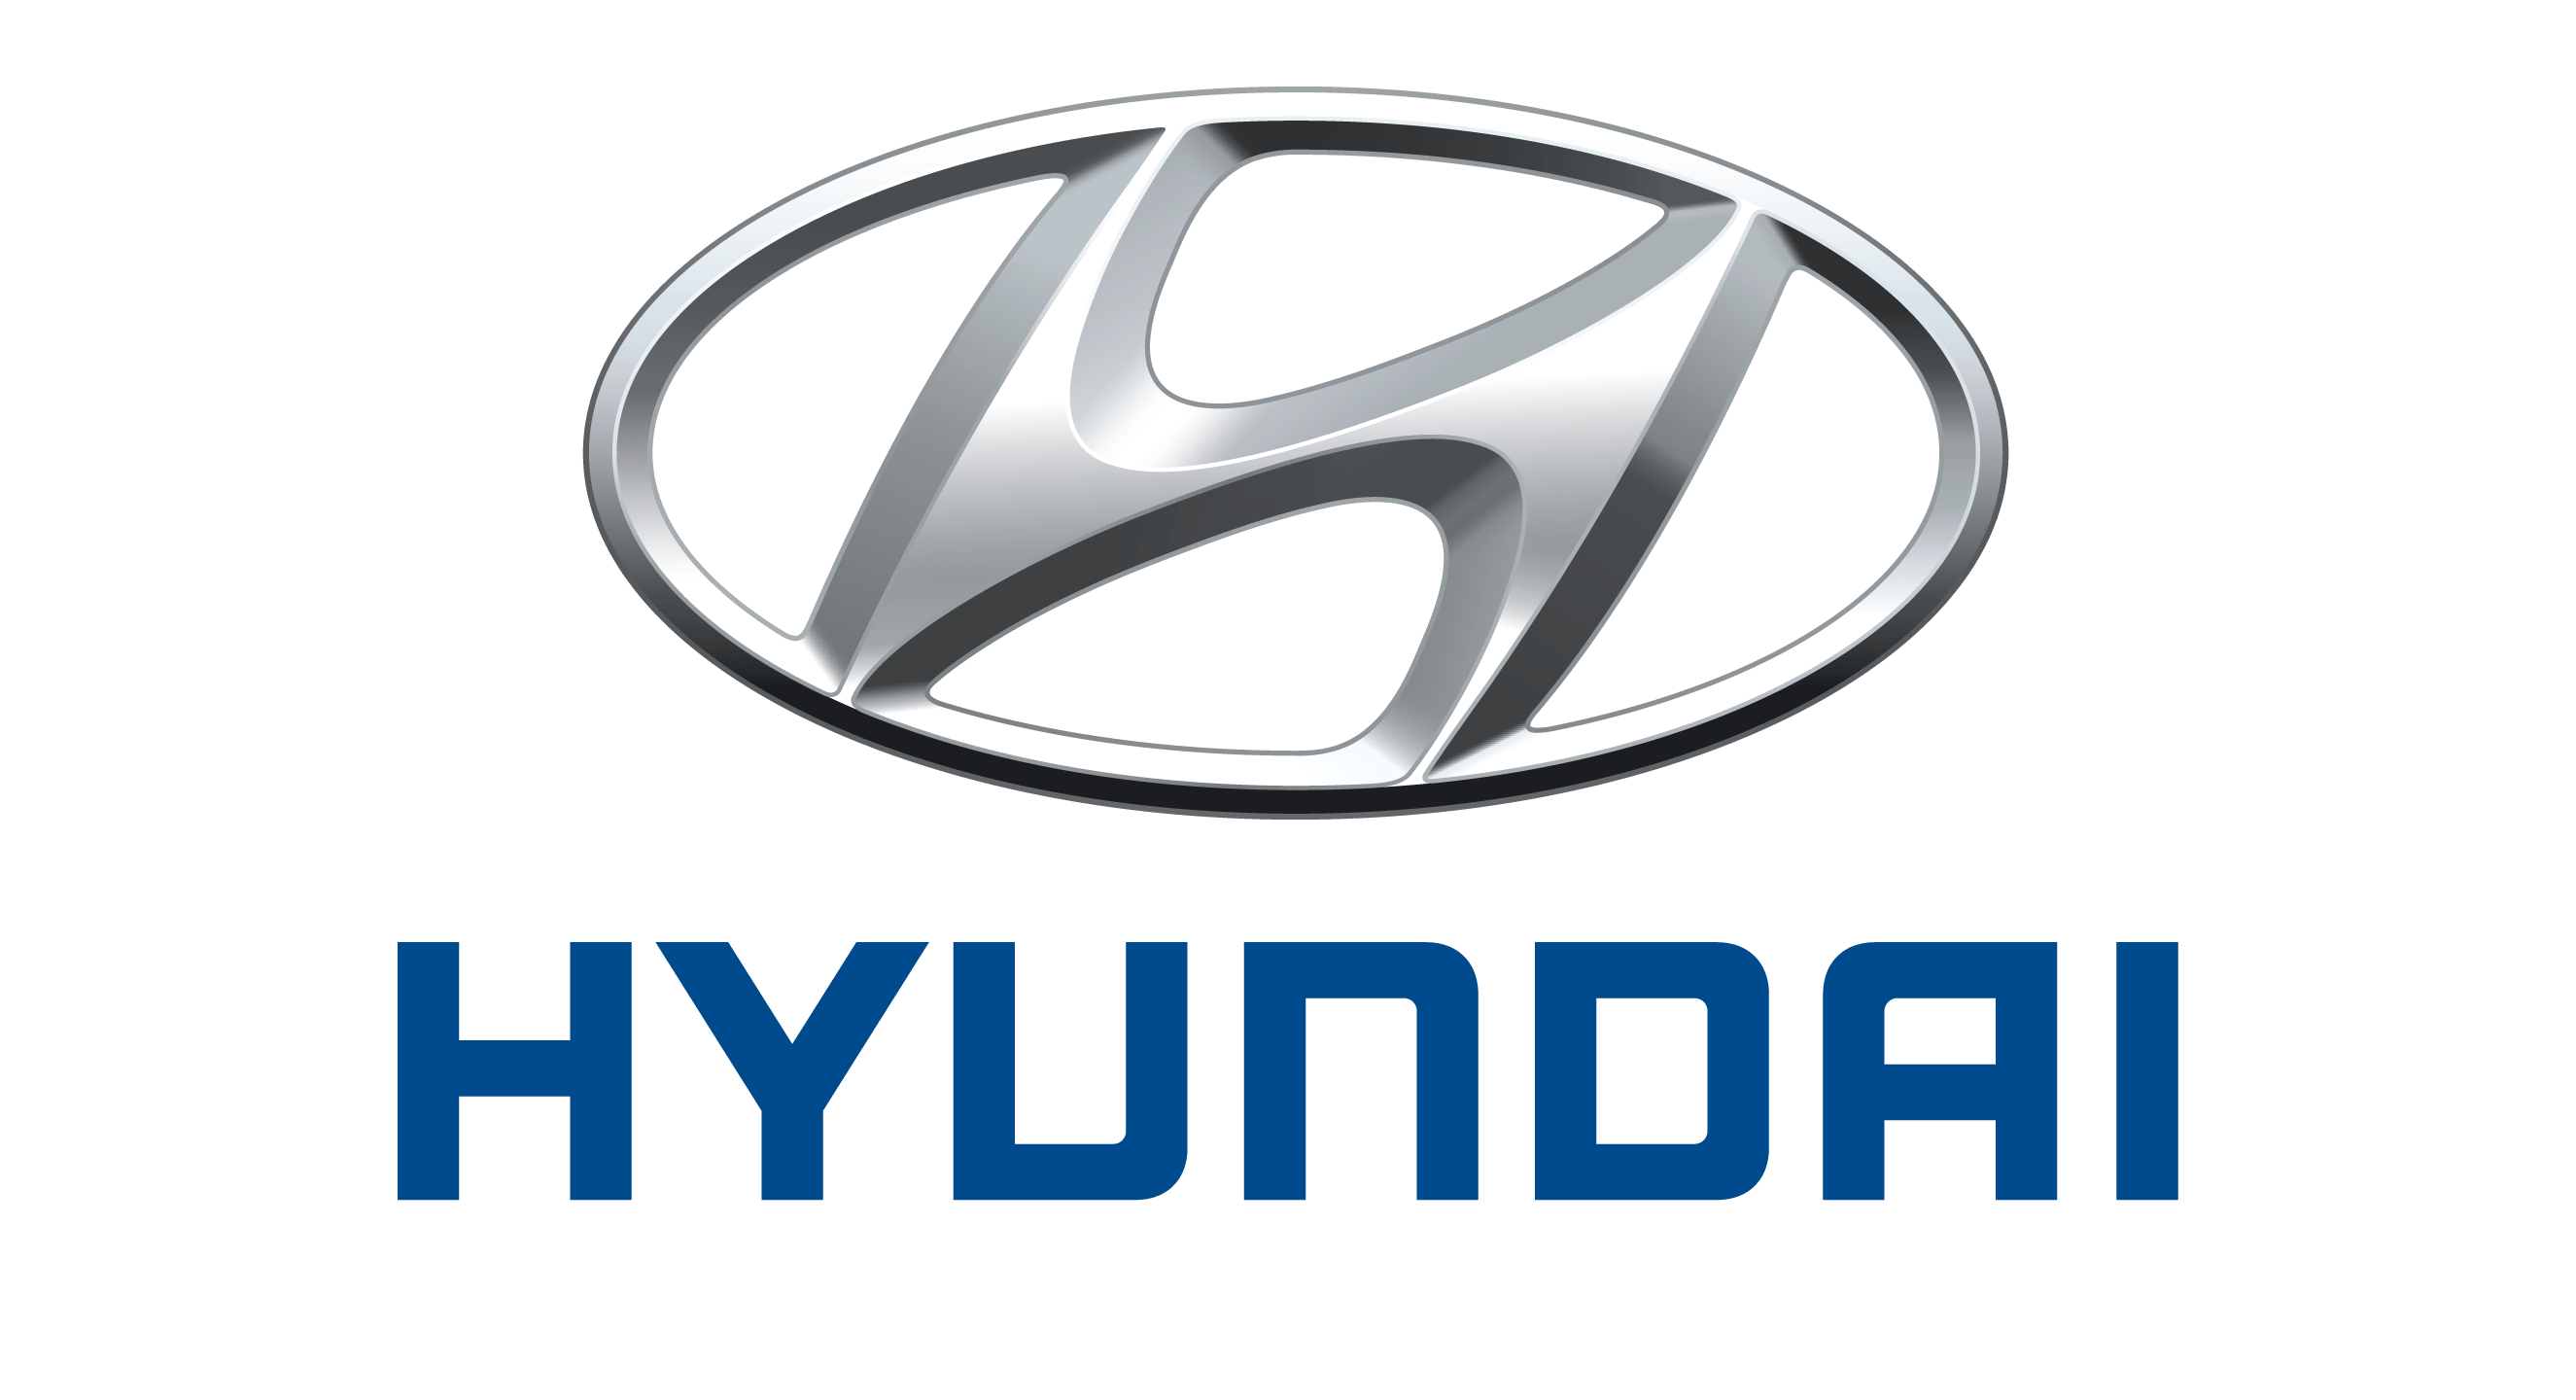 logo xe hyundai moi nhat - Phụ kiện Ô Tô phổ biến trên xe hiện nay